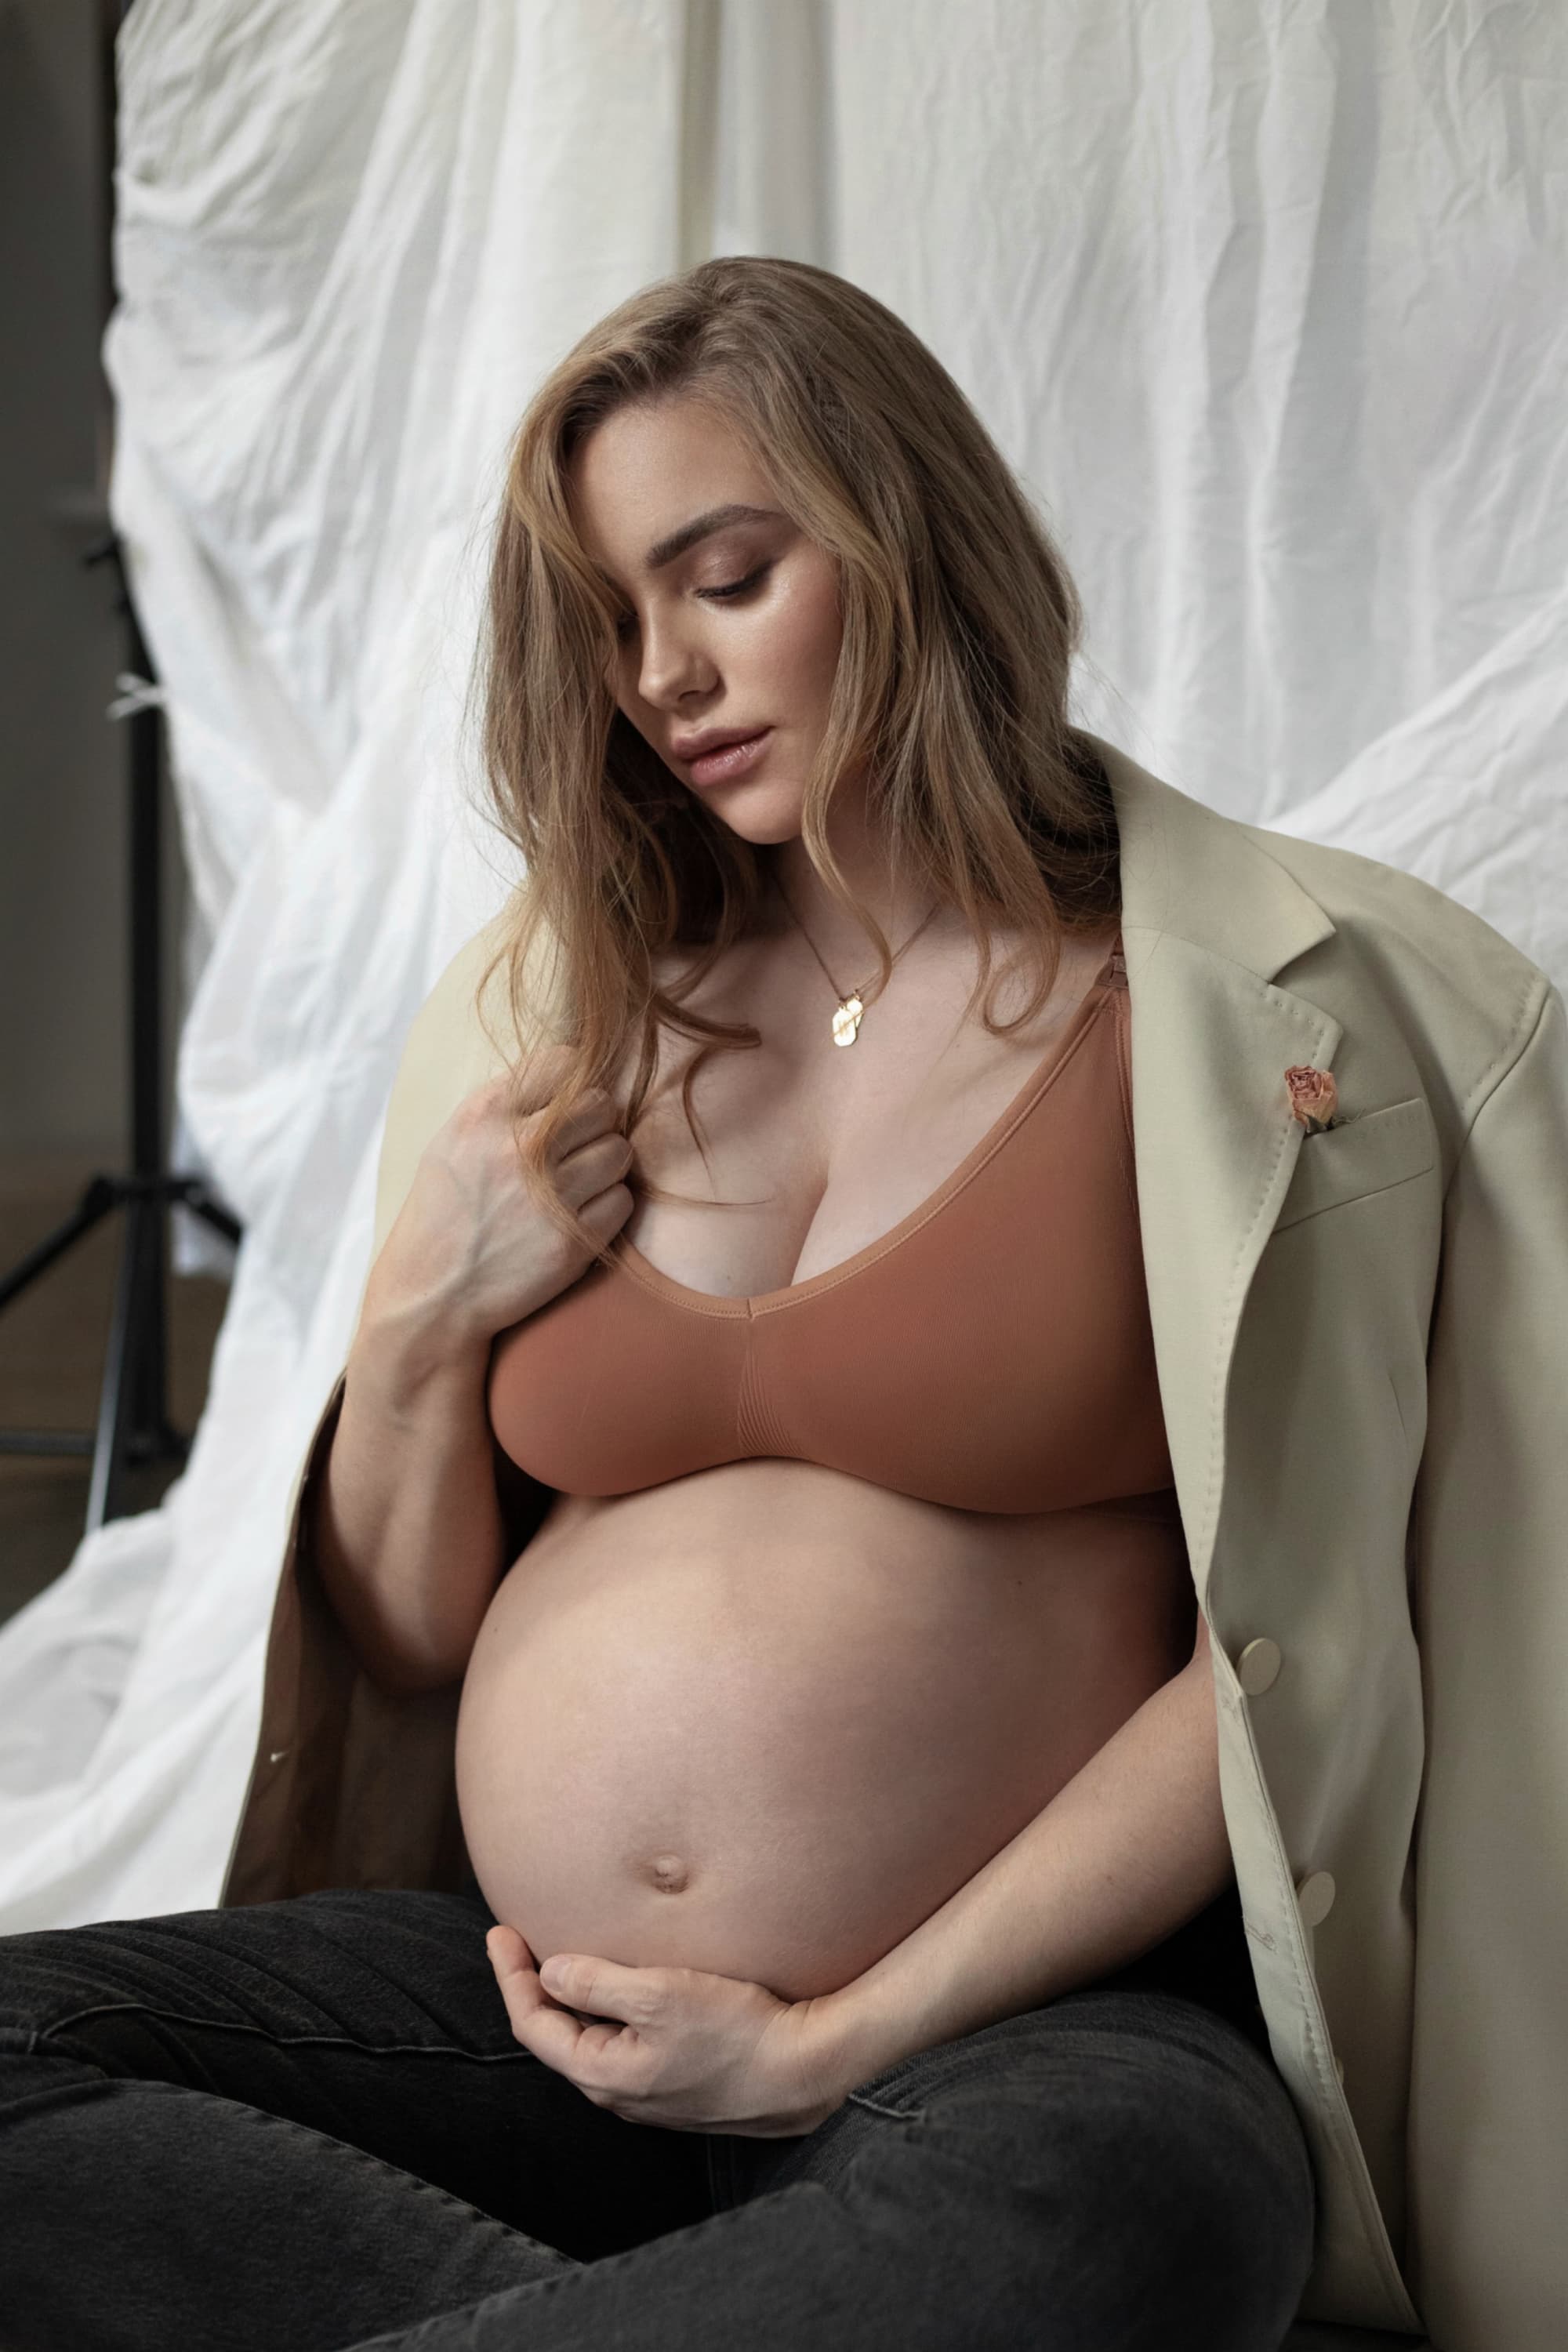  Bravado Bravado Designs Womens Maternity Body Silk